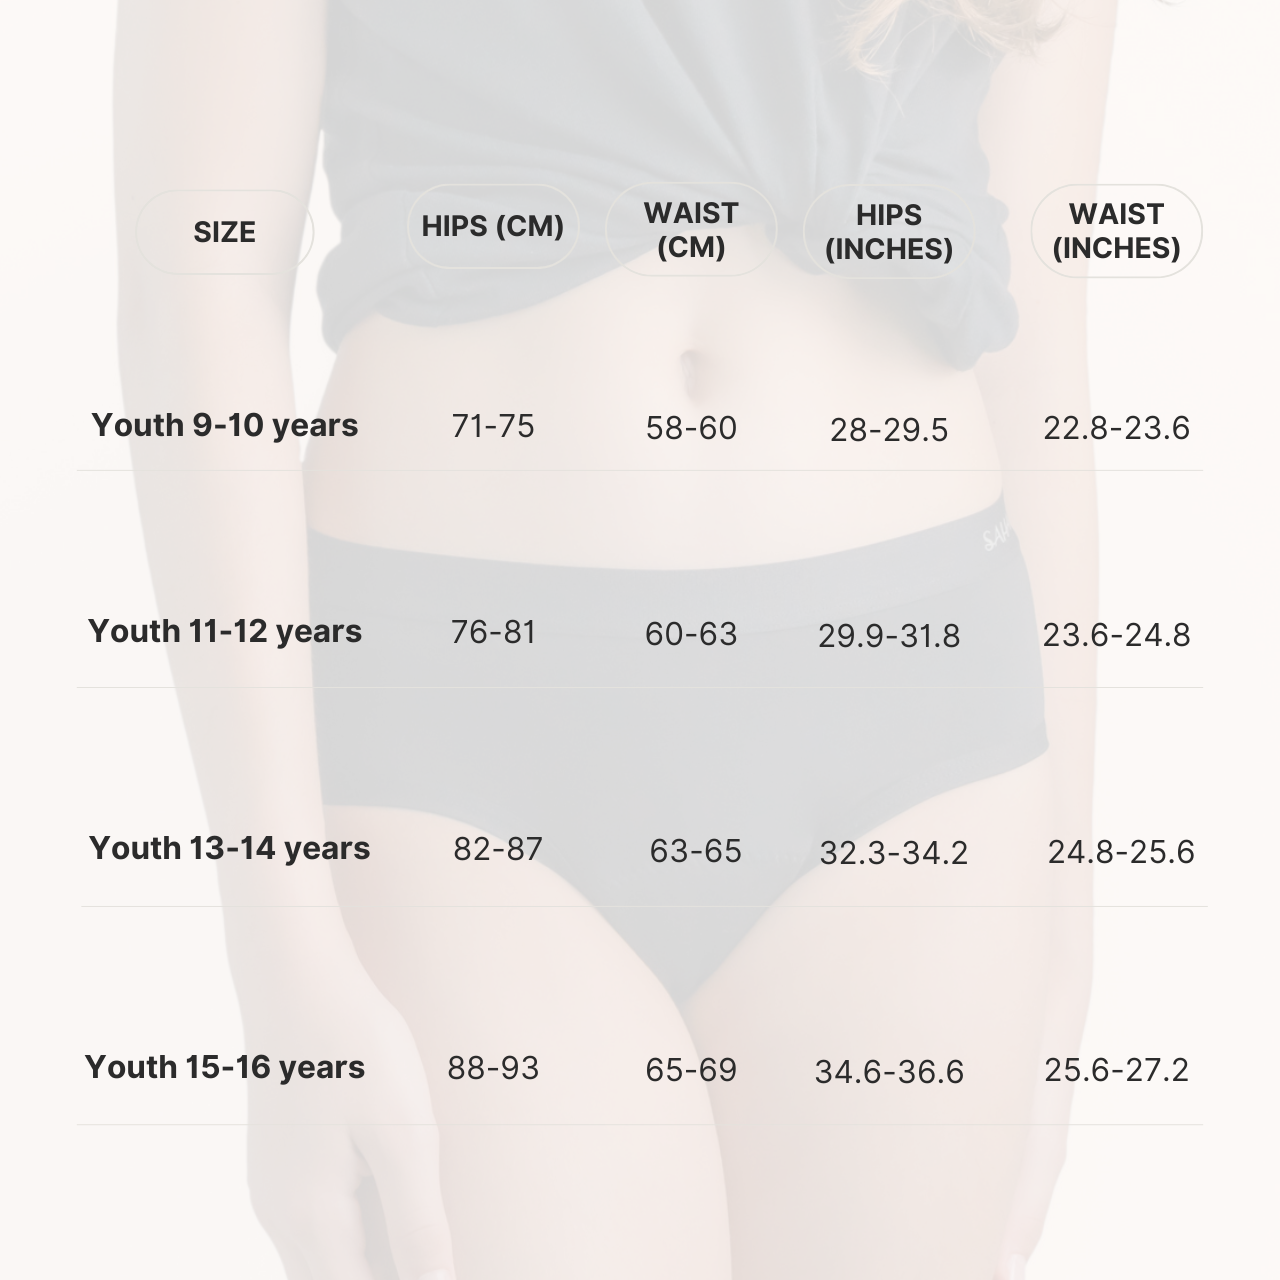 ملابس داخلية مقاومة للدورة الشهرية من صحارى للمراهقات، قدرة امتصاص ثقيلة - للأعمار من 13 إلى 14 سنة